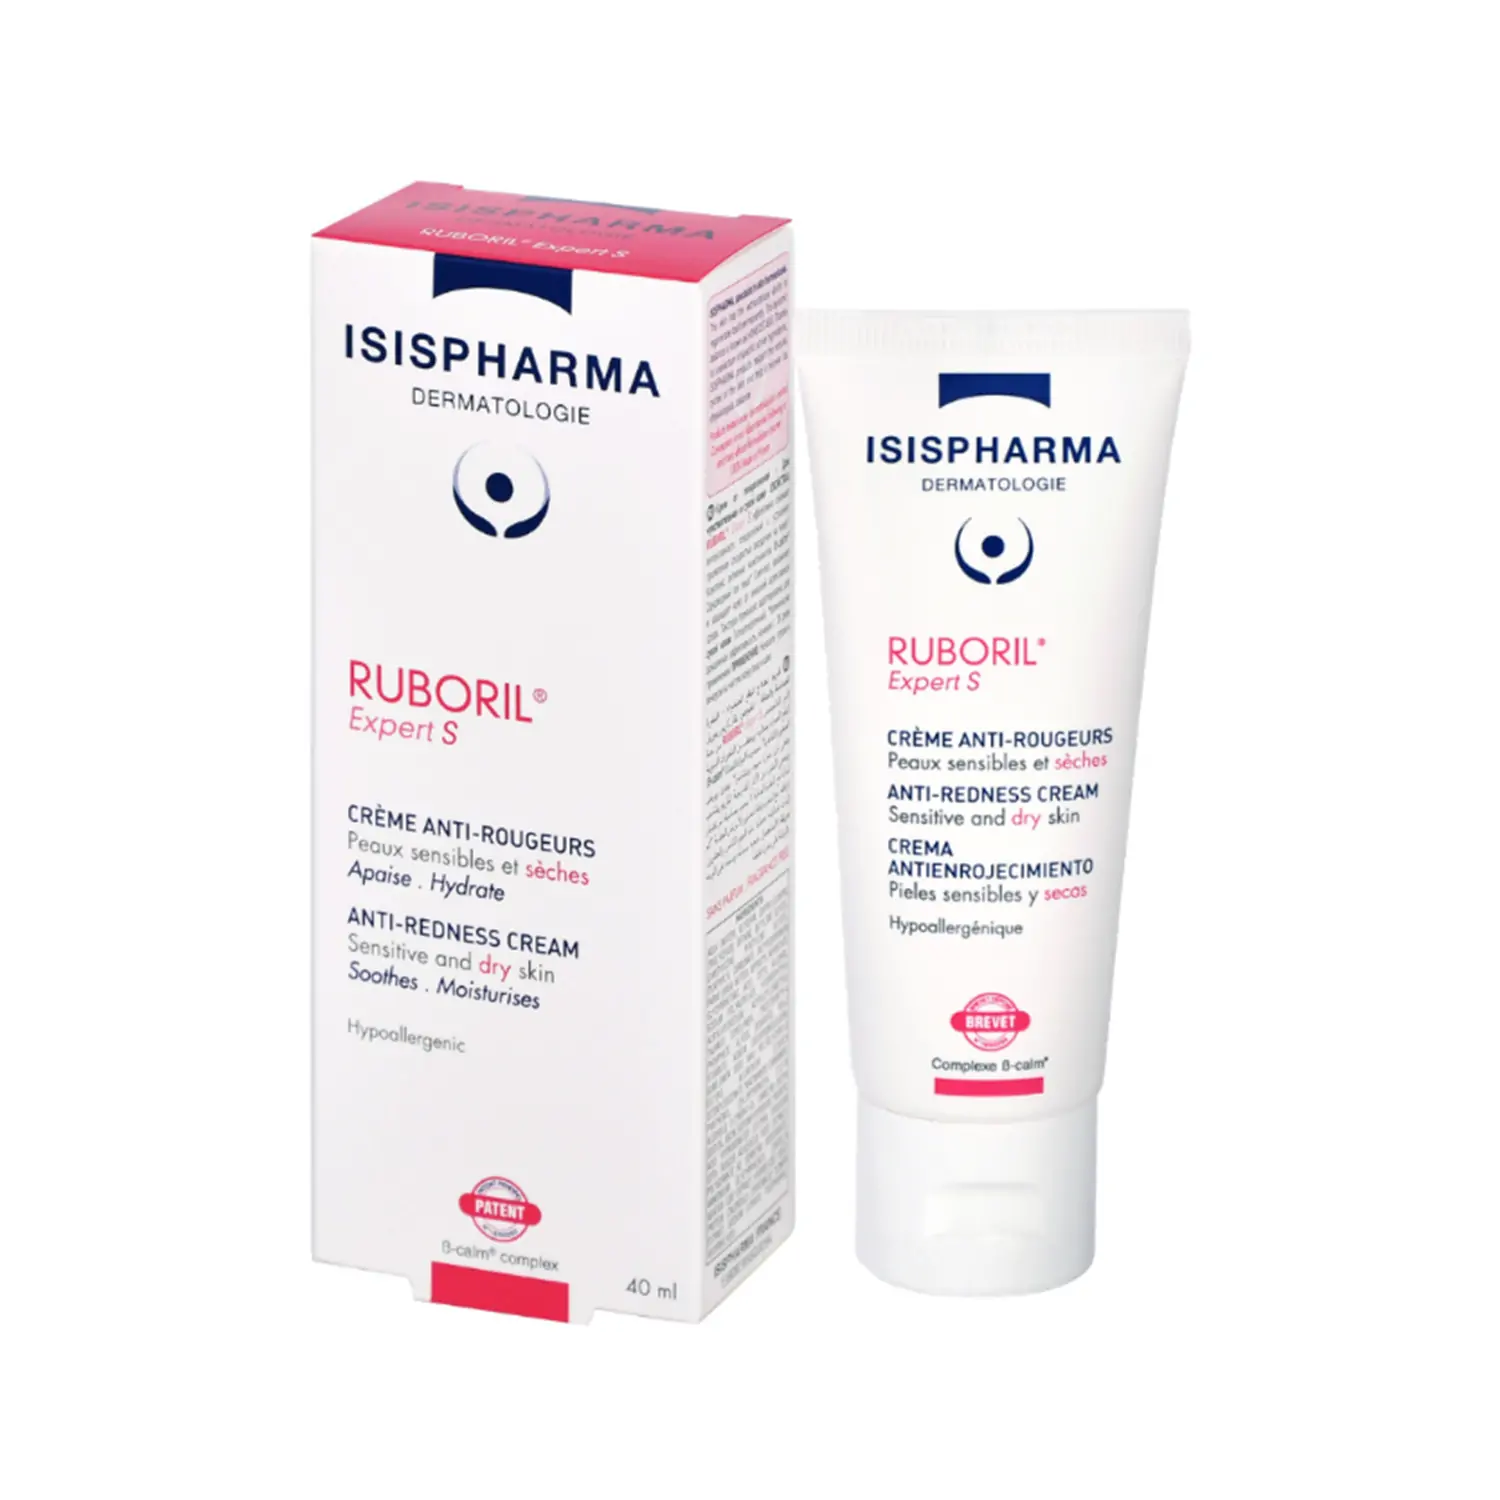 Isispharma Ruboril Expert S Anti-Redness Cream